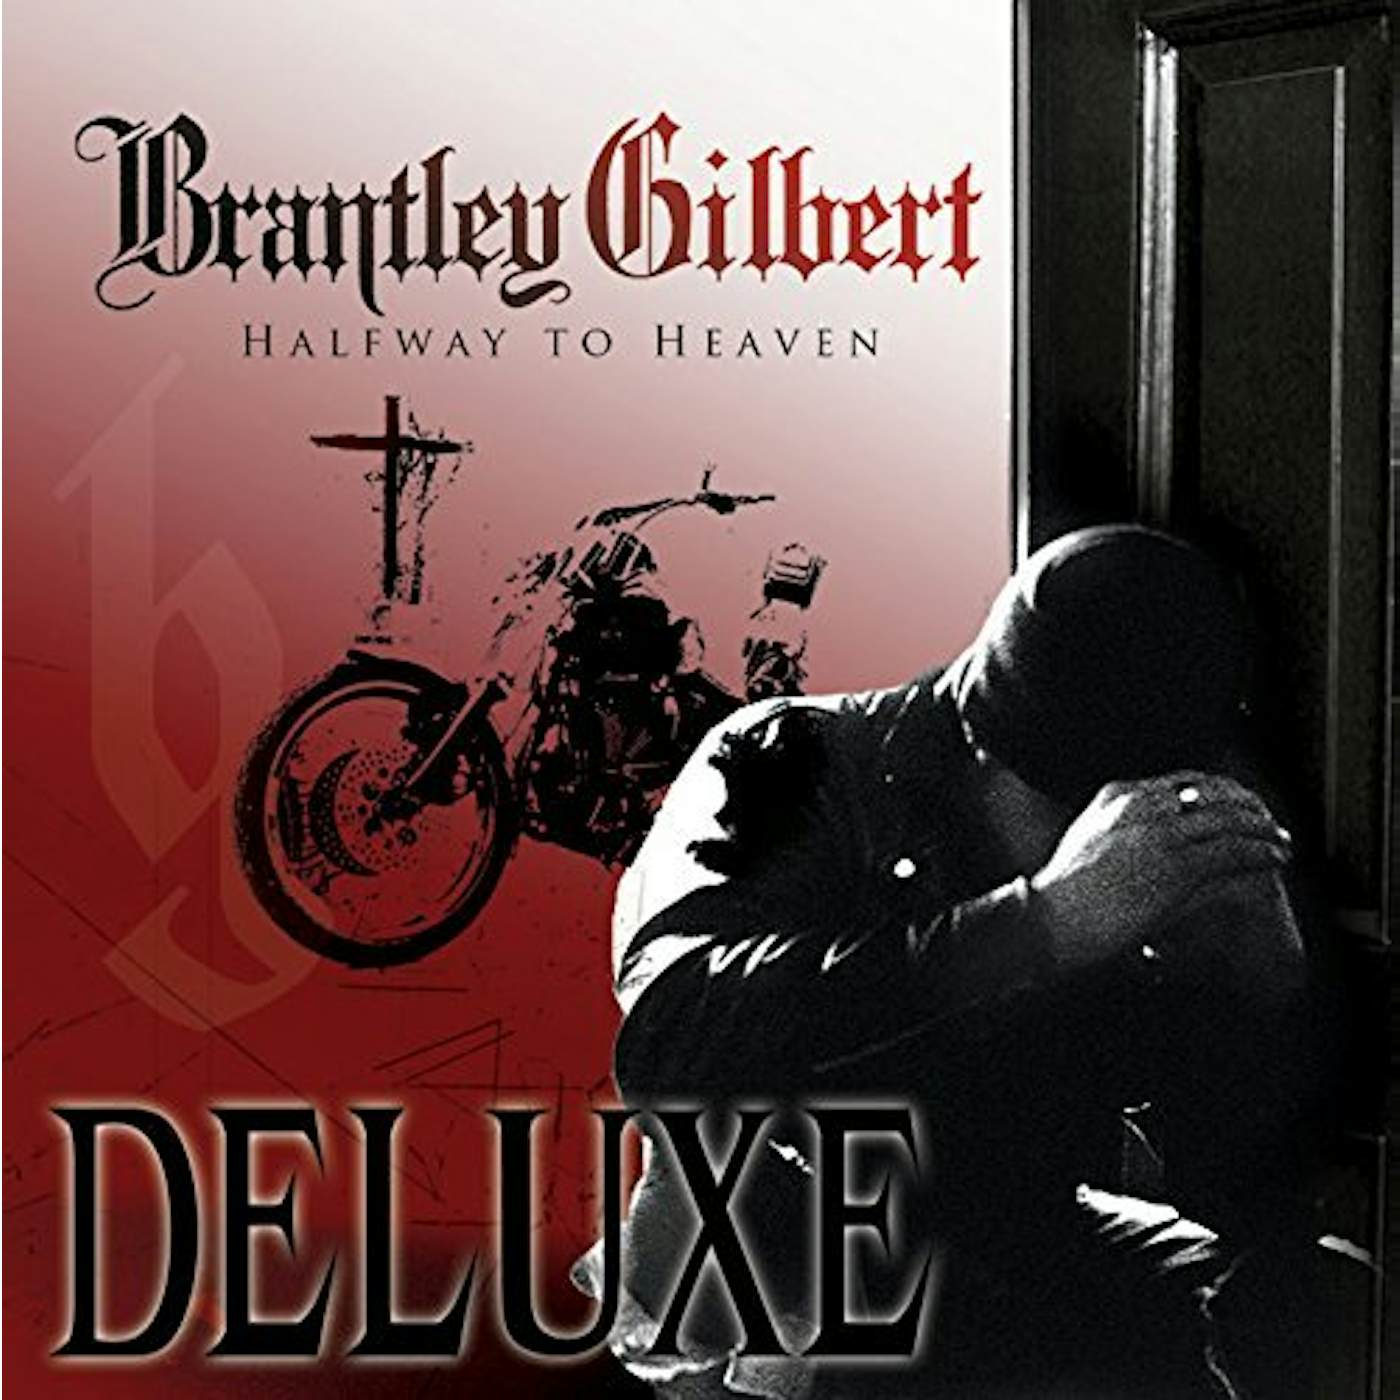 Brantley Gilbert Halfway To Heaven Vinyl Record